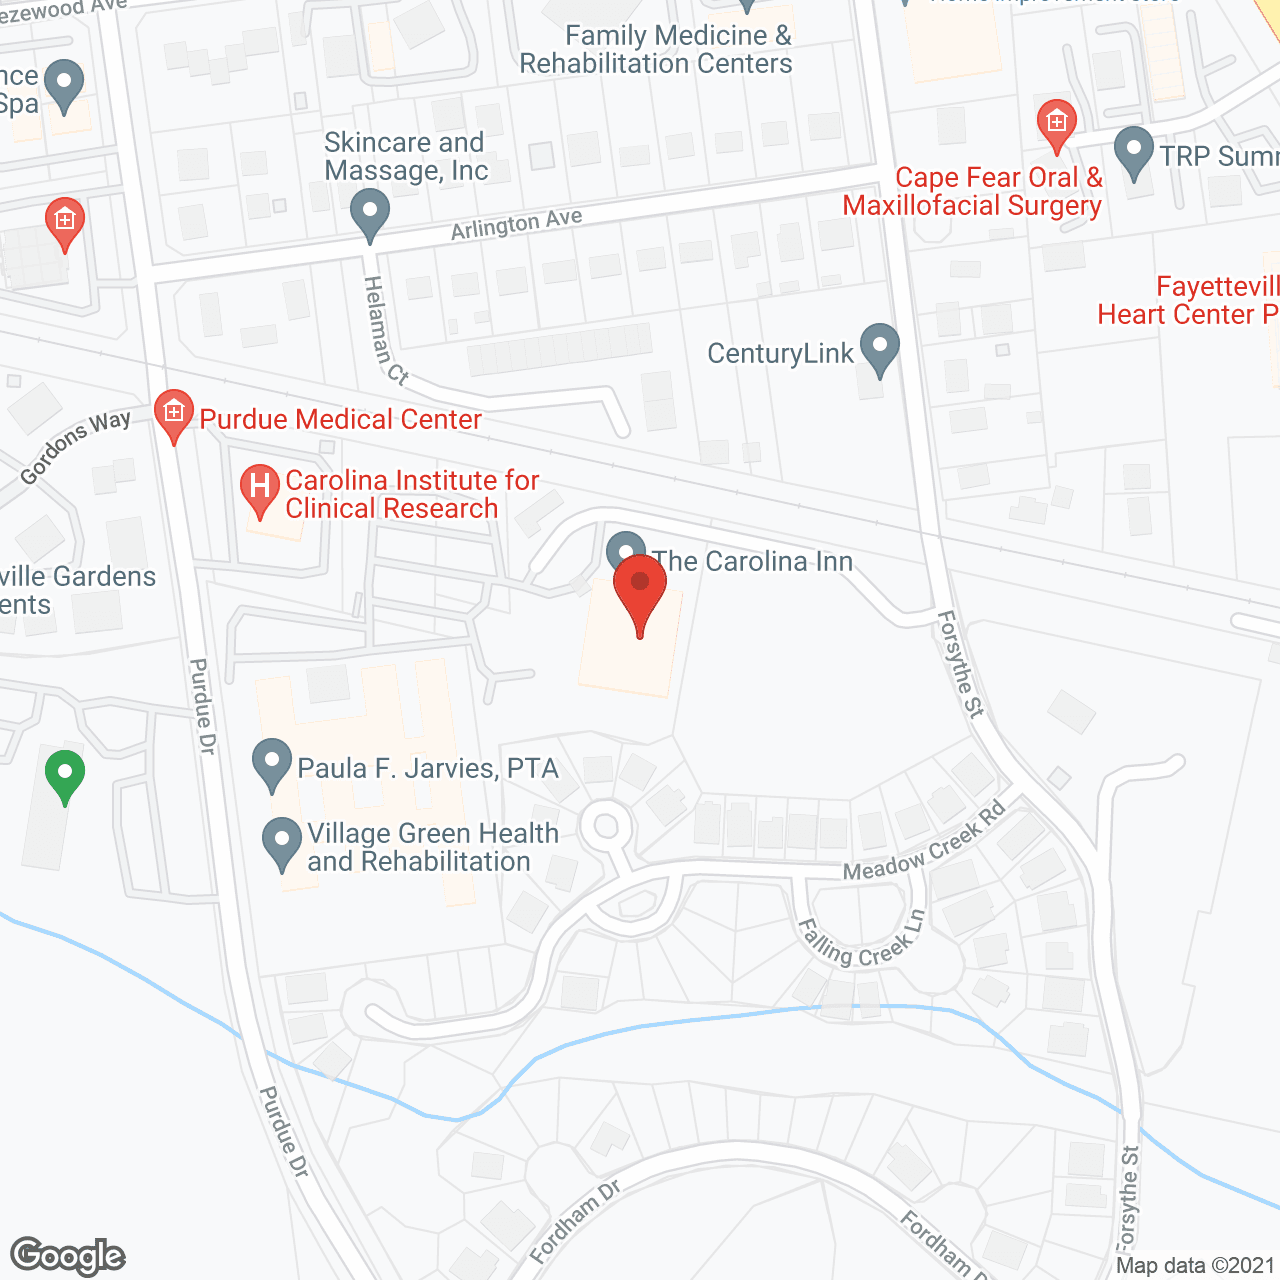 The Carolina Inn in google map